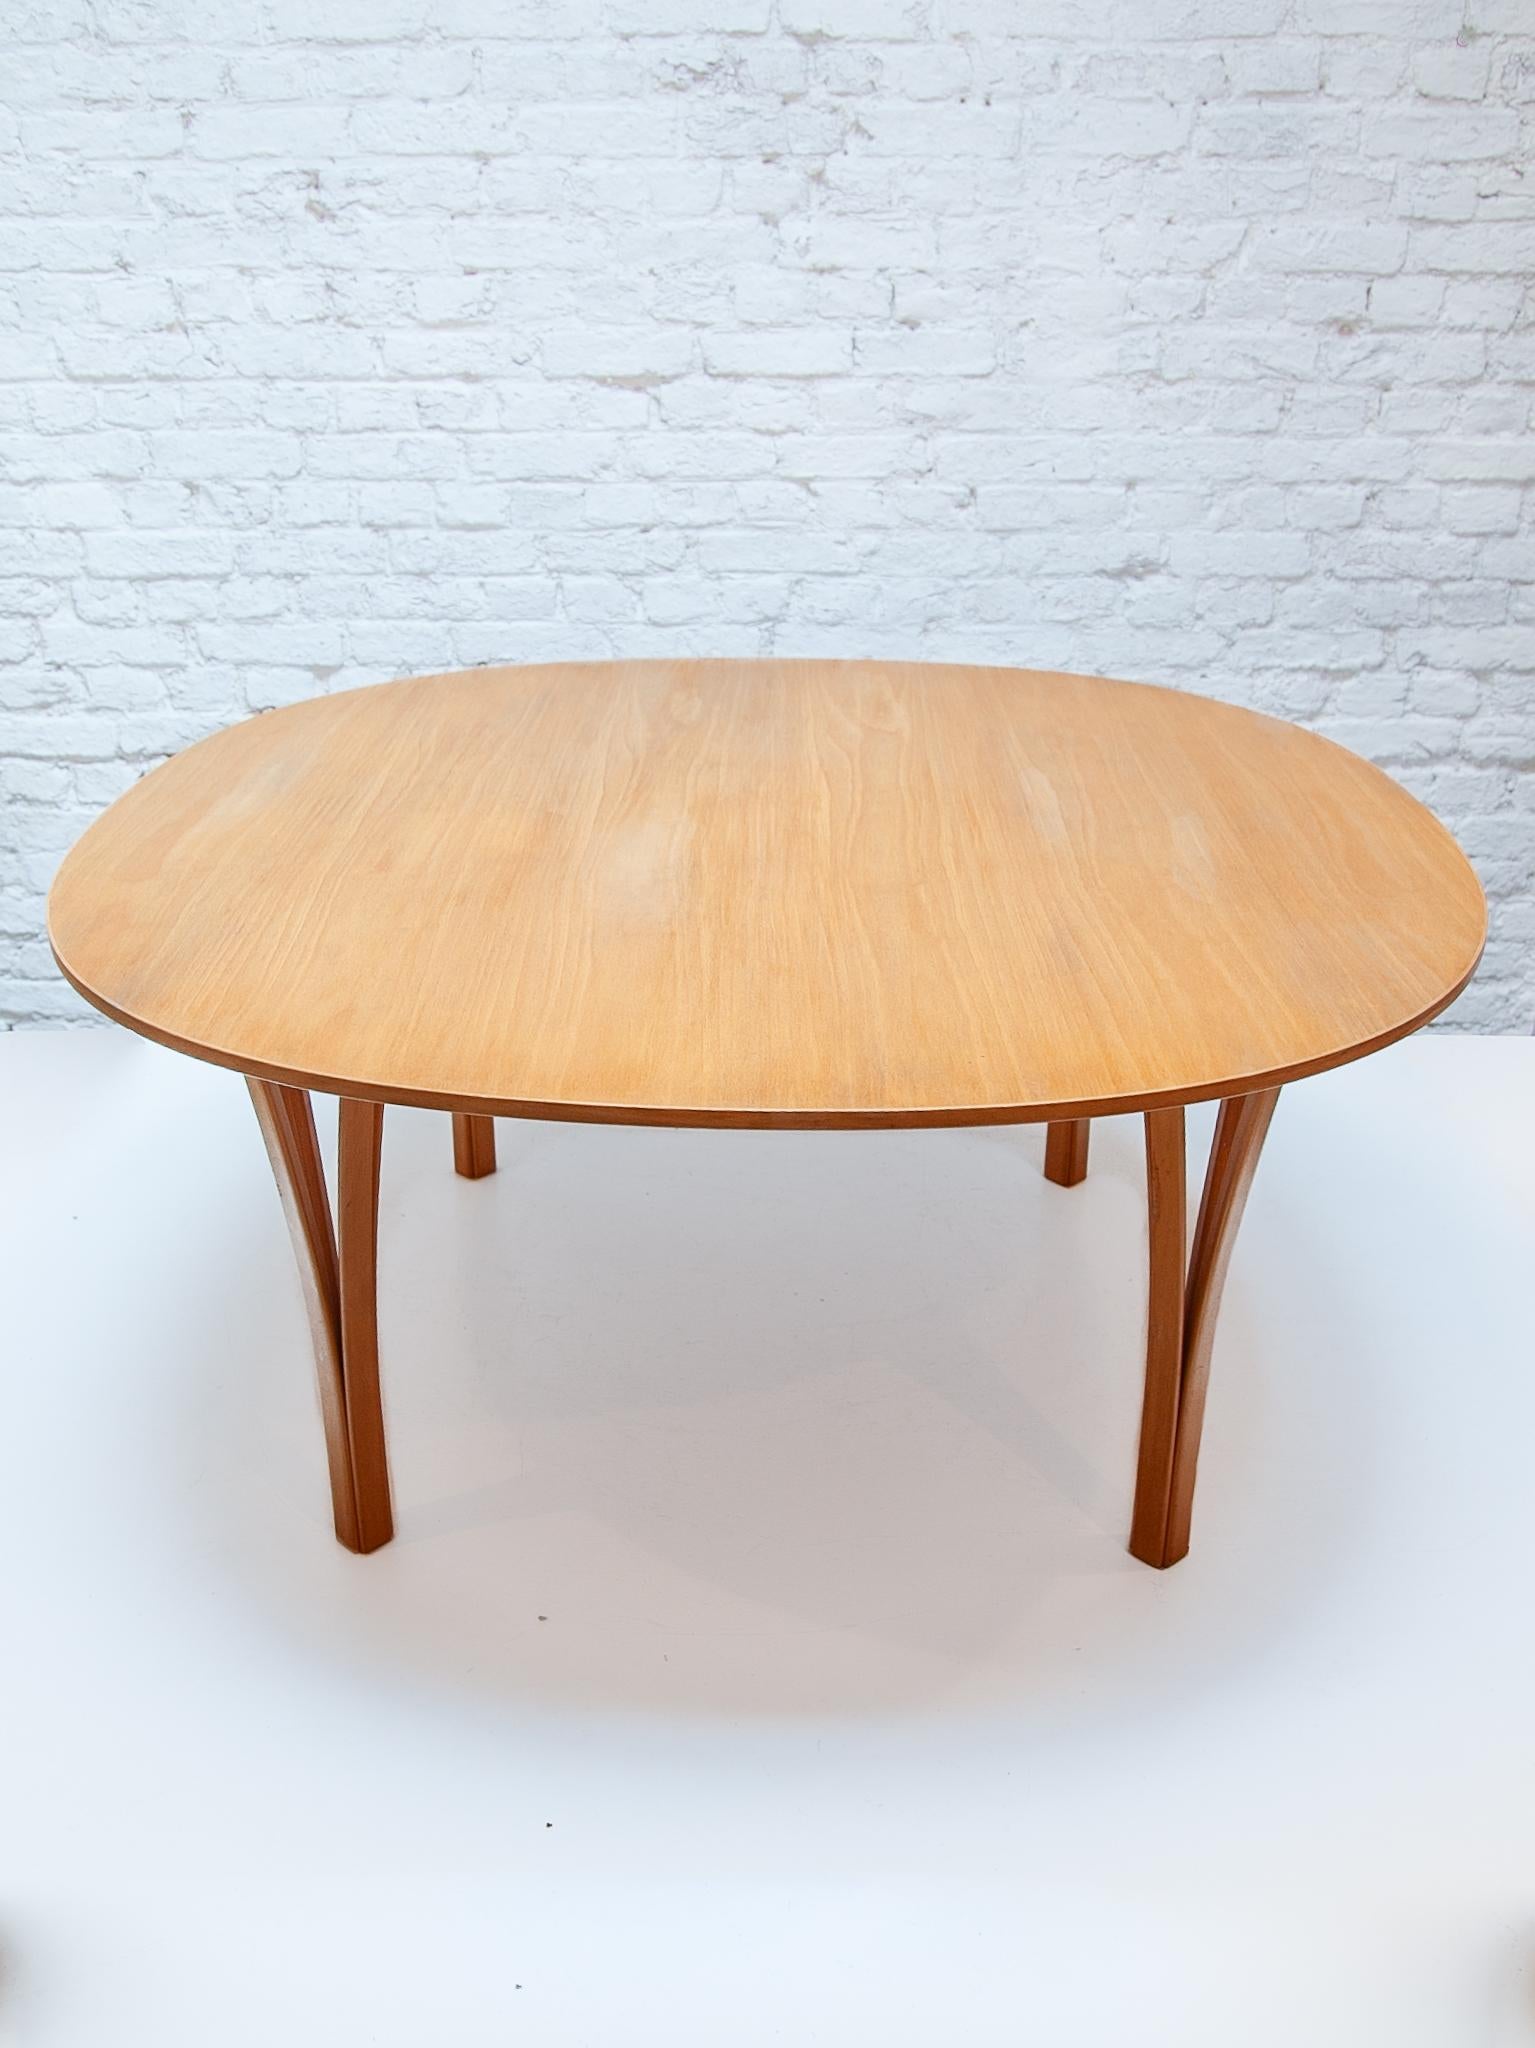  Table basse conçue par Piet Hein & Bruno Mathsson et produite par Fritz Hansen au Danemark en 1990. Cet exemplaire du Super-Elliptical est doté d'un superbe plateau en noyer avec un magnifique grain de bois, combiné avec les pieds en bois